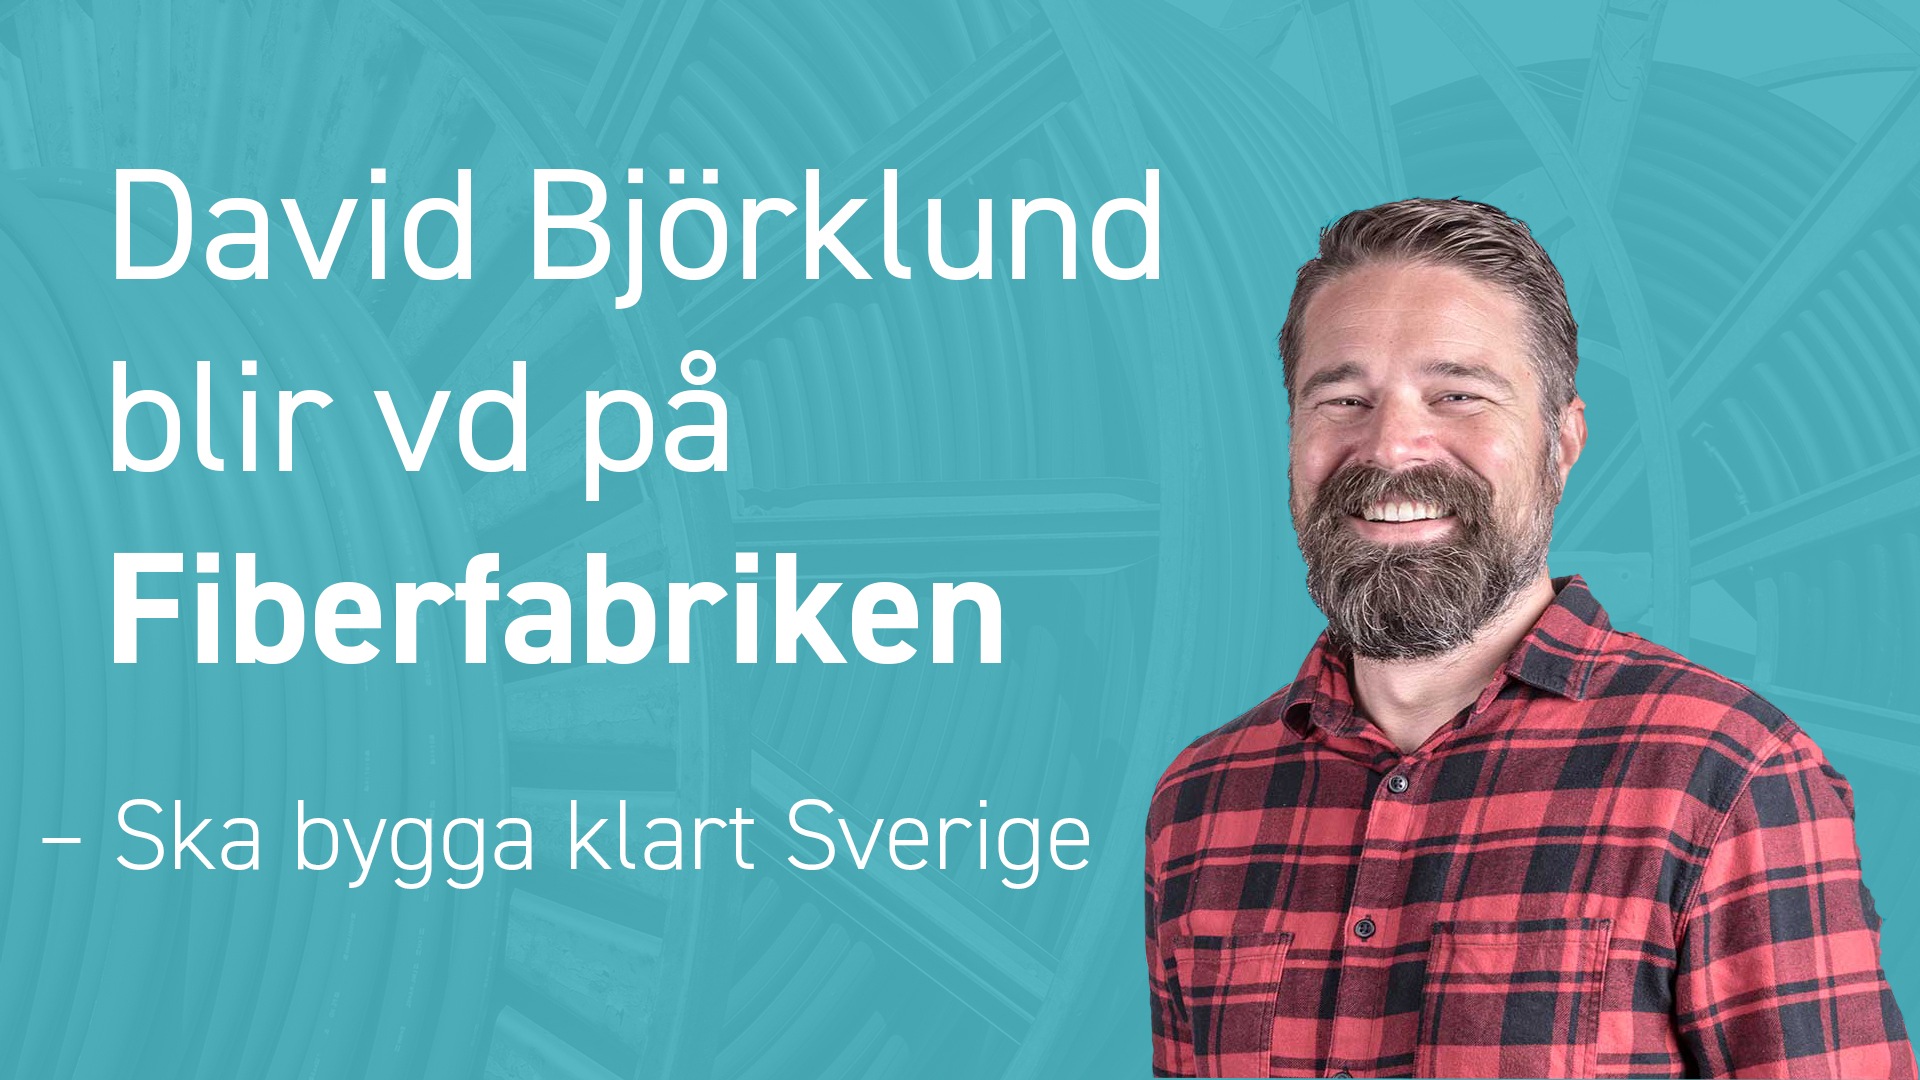 David Björklund blir vd på nystartade Fiberfabriken